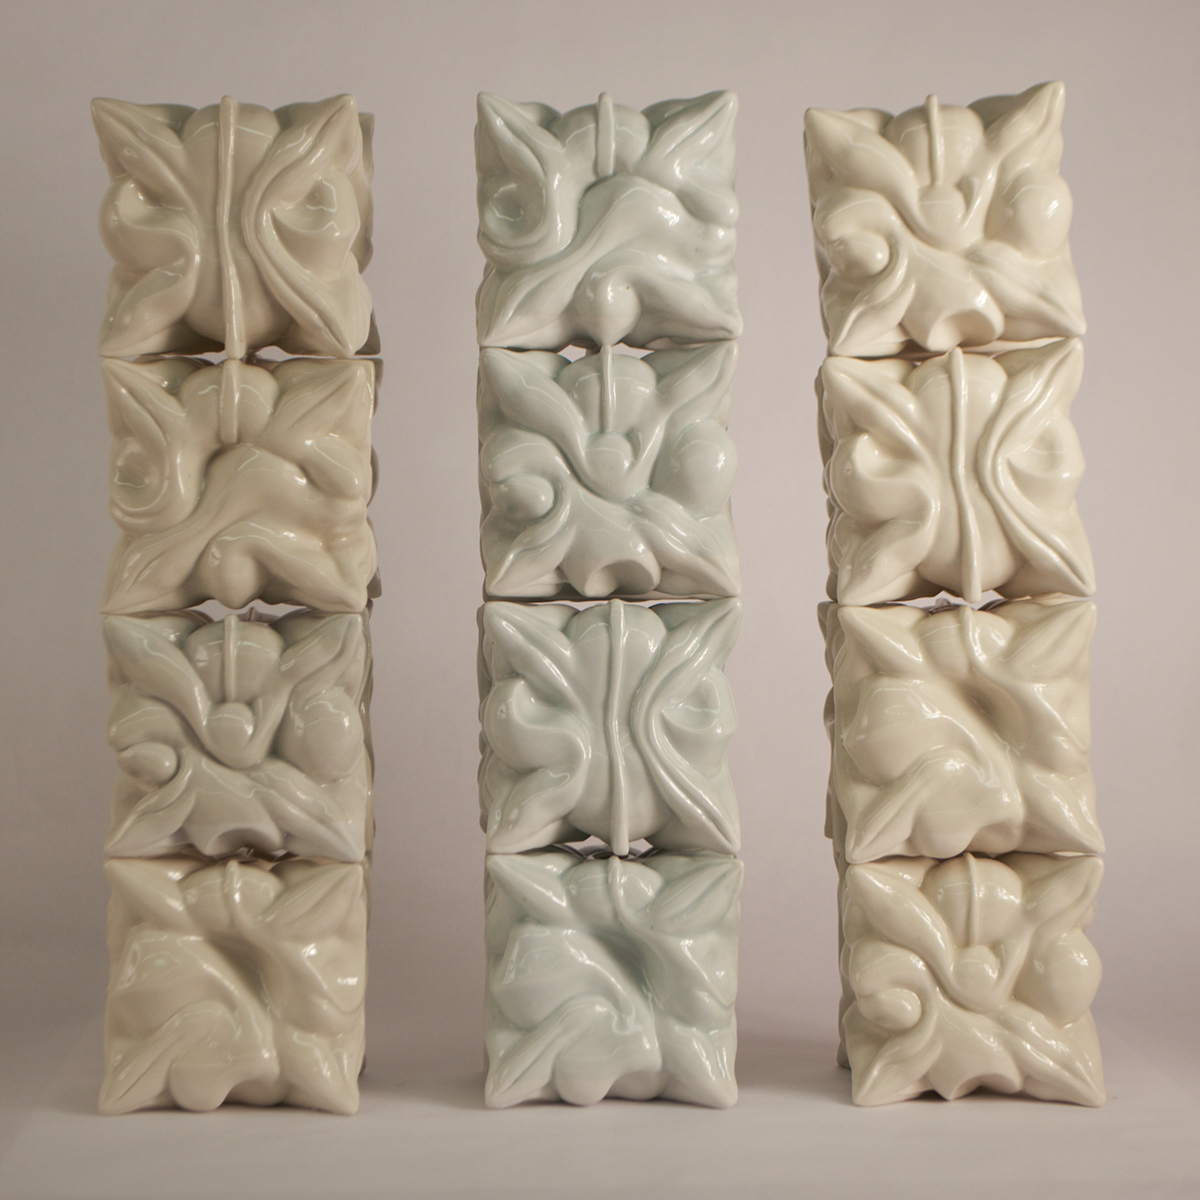 ceramics  slip casting porcelain Vase floral moldmaking Plaster casting 